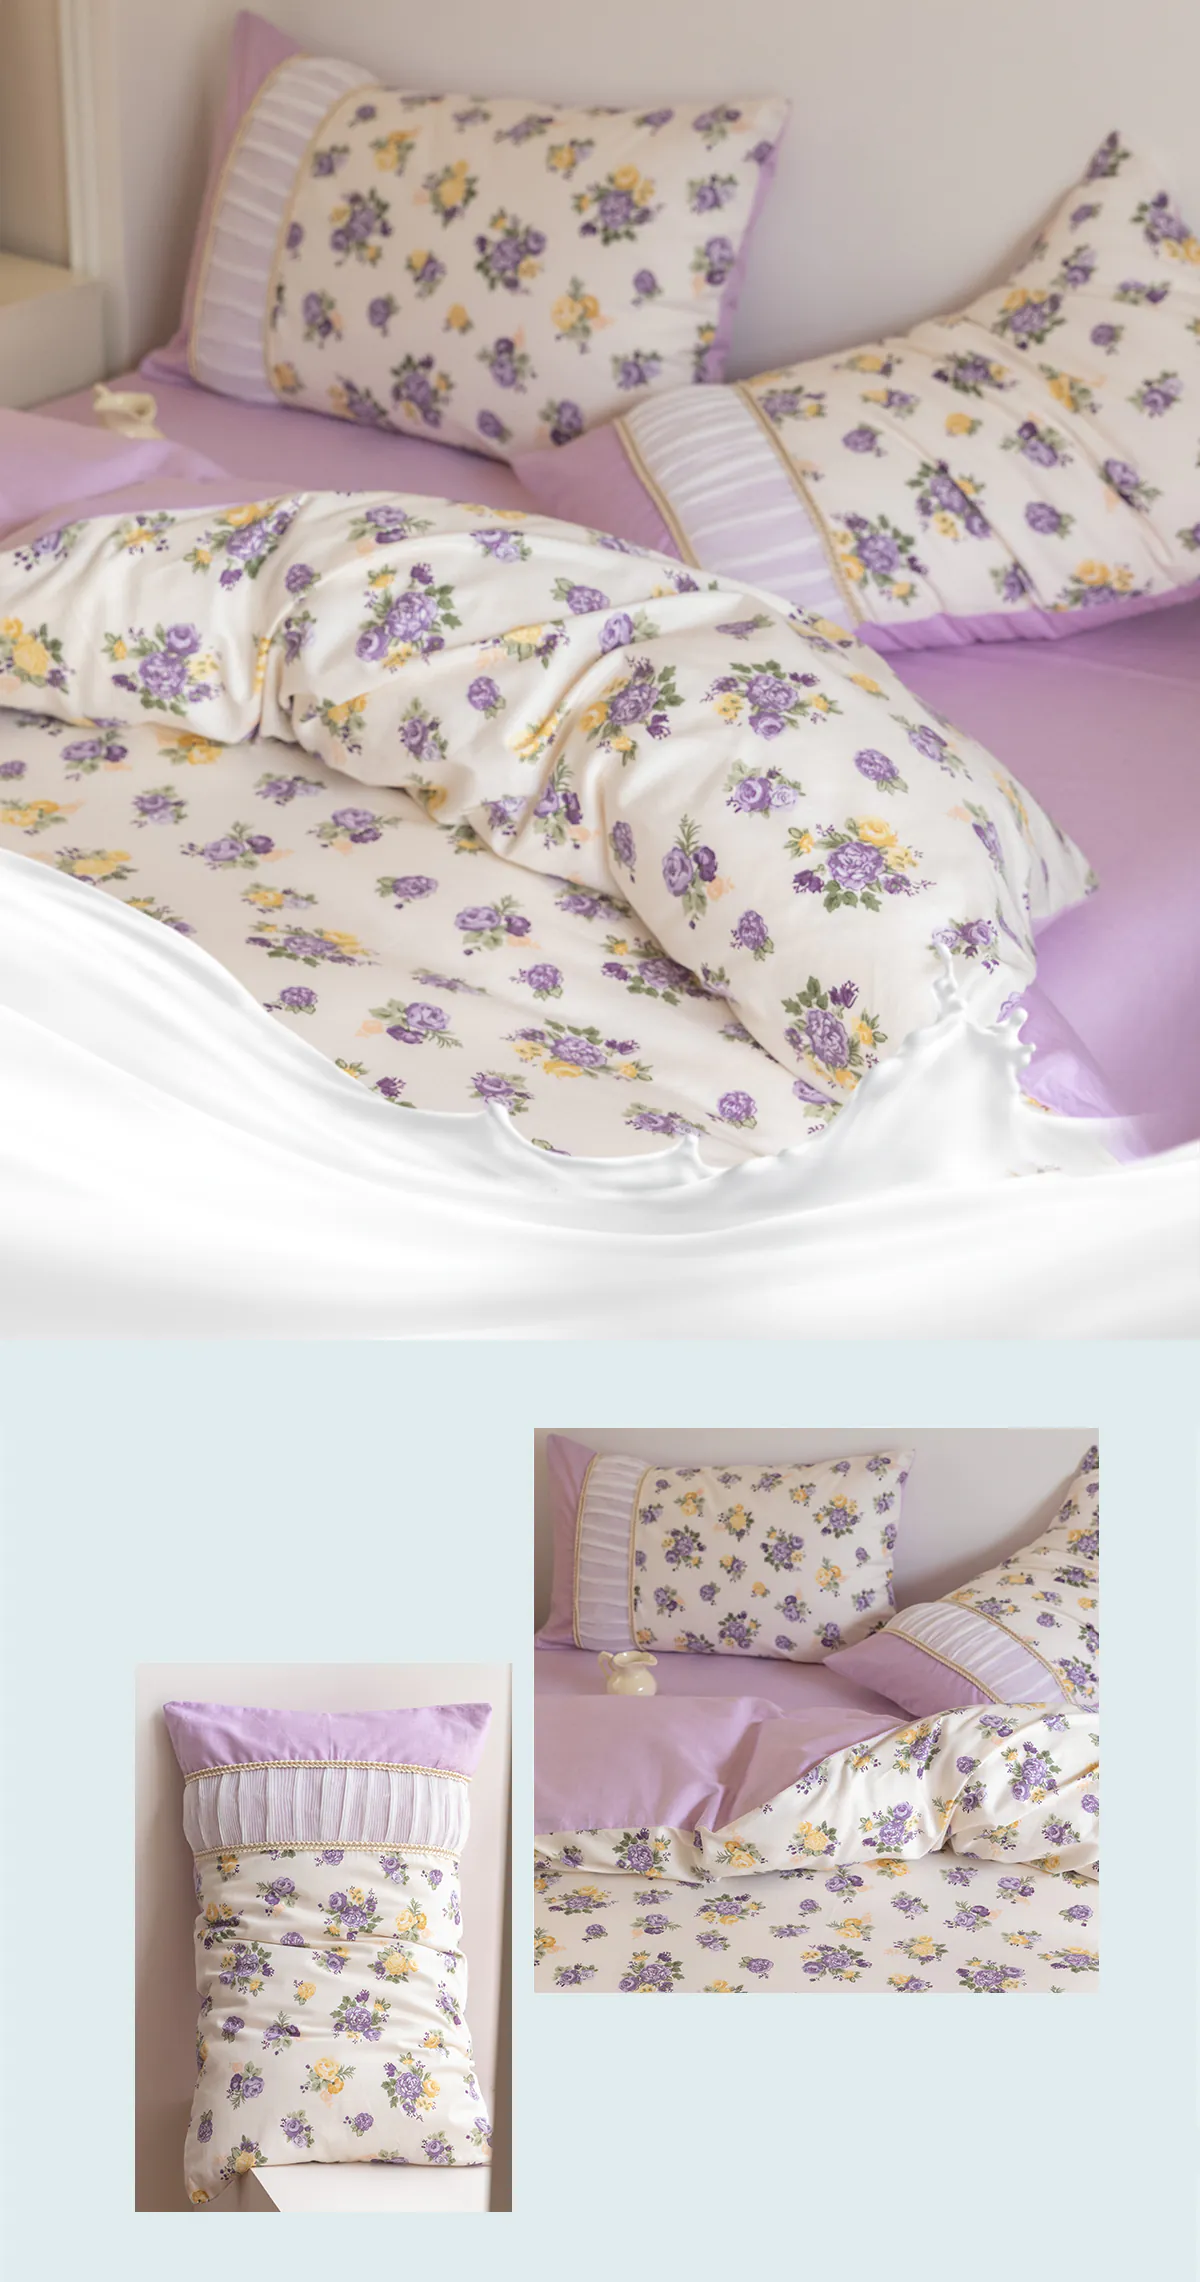 Retro-Princess-Style-100-Cotton-Floral-Duvet-Cover-Bedding-Set28